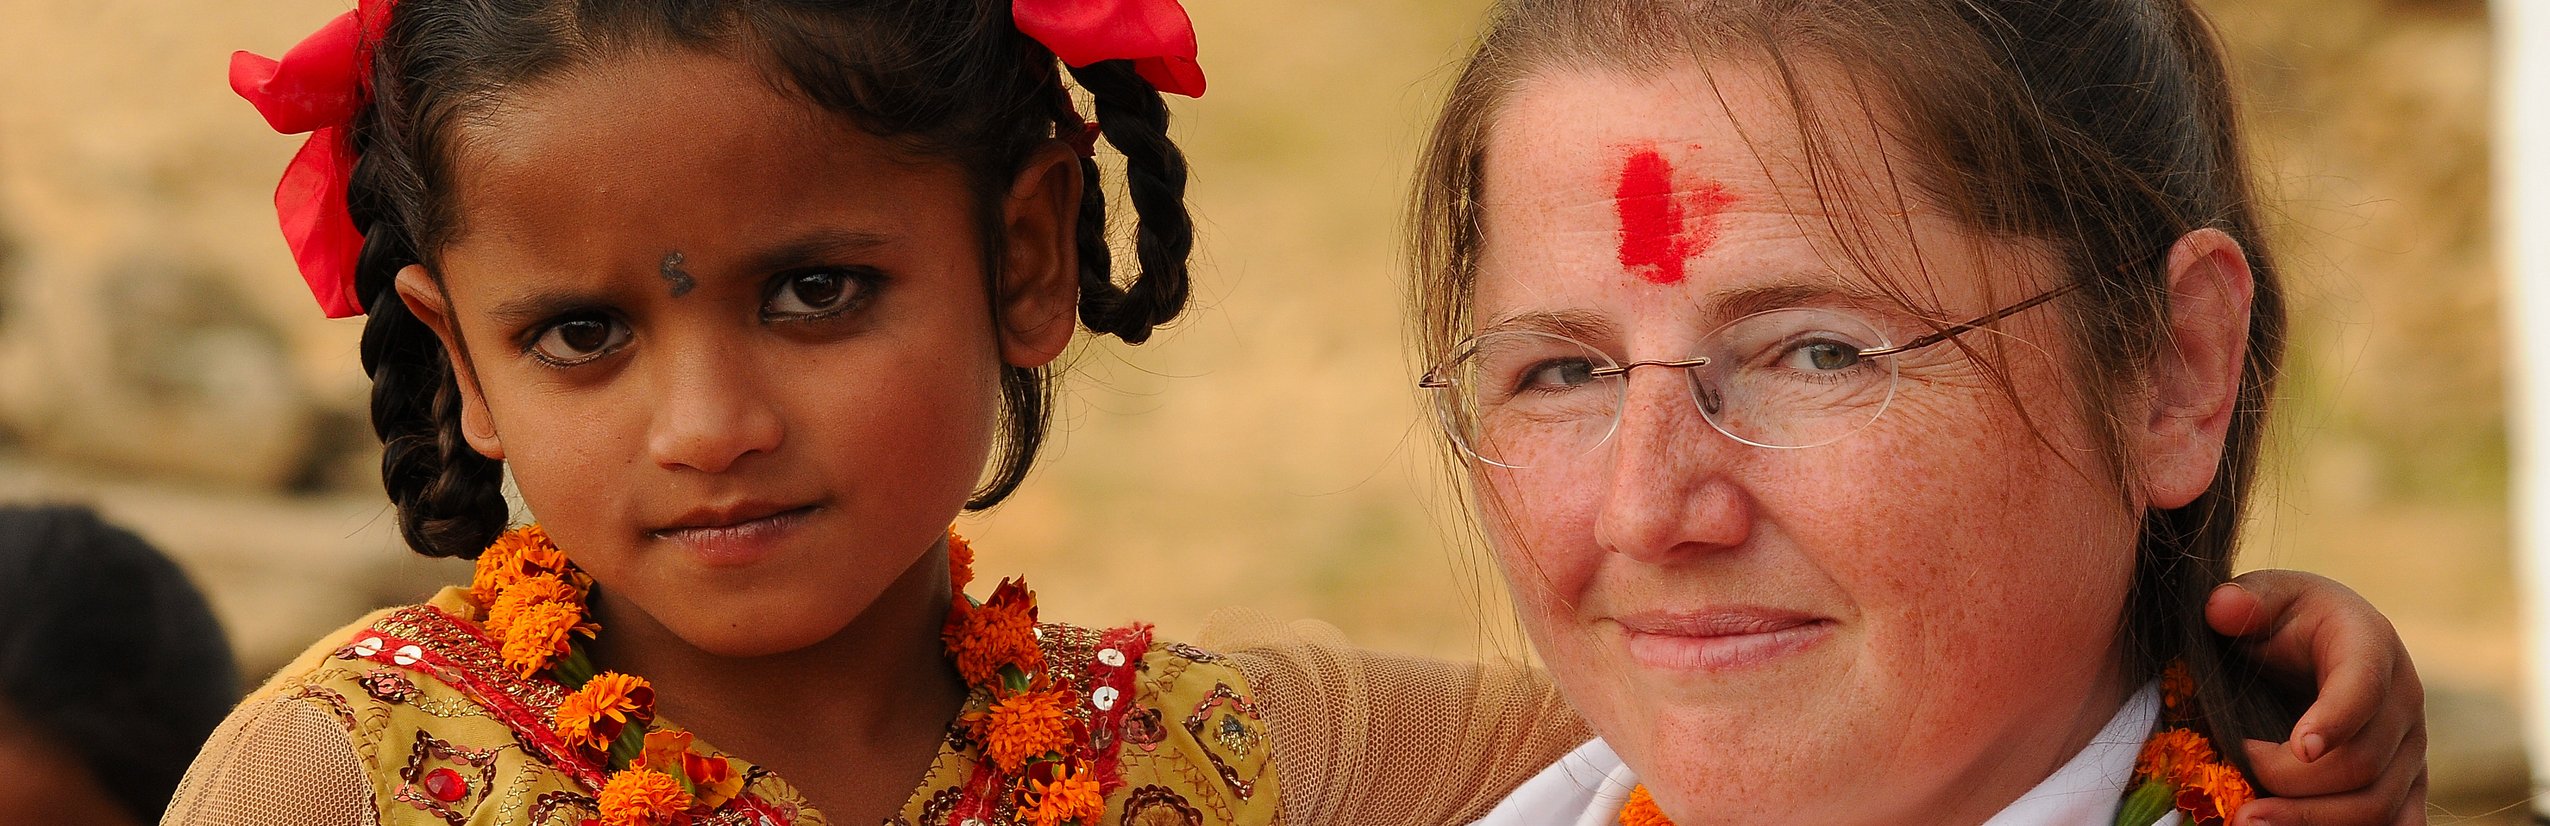 Nepal mit Kindern - Familienreise durch Nepal - Kultur & Menschen kennenlernen